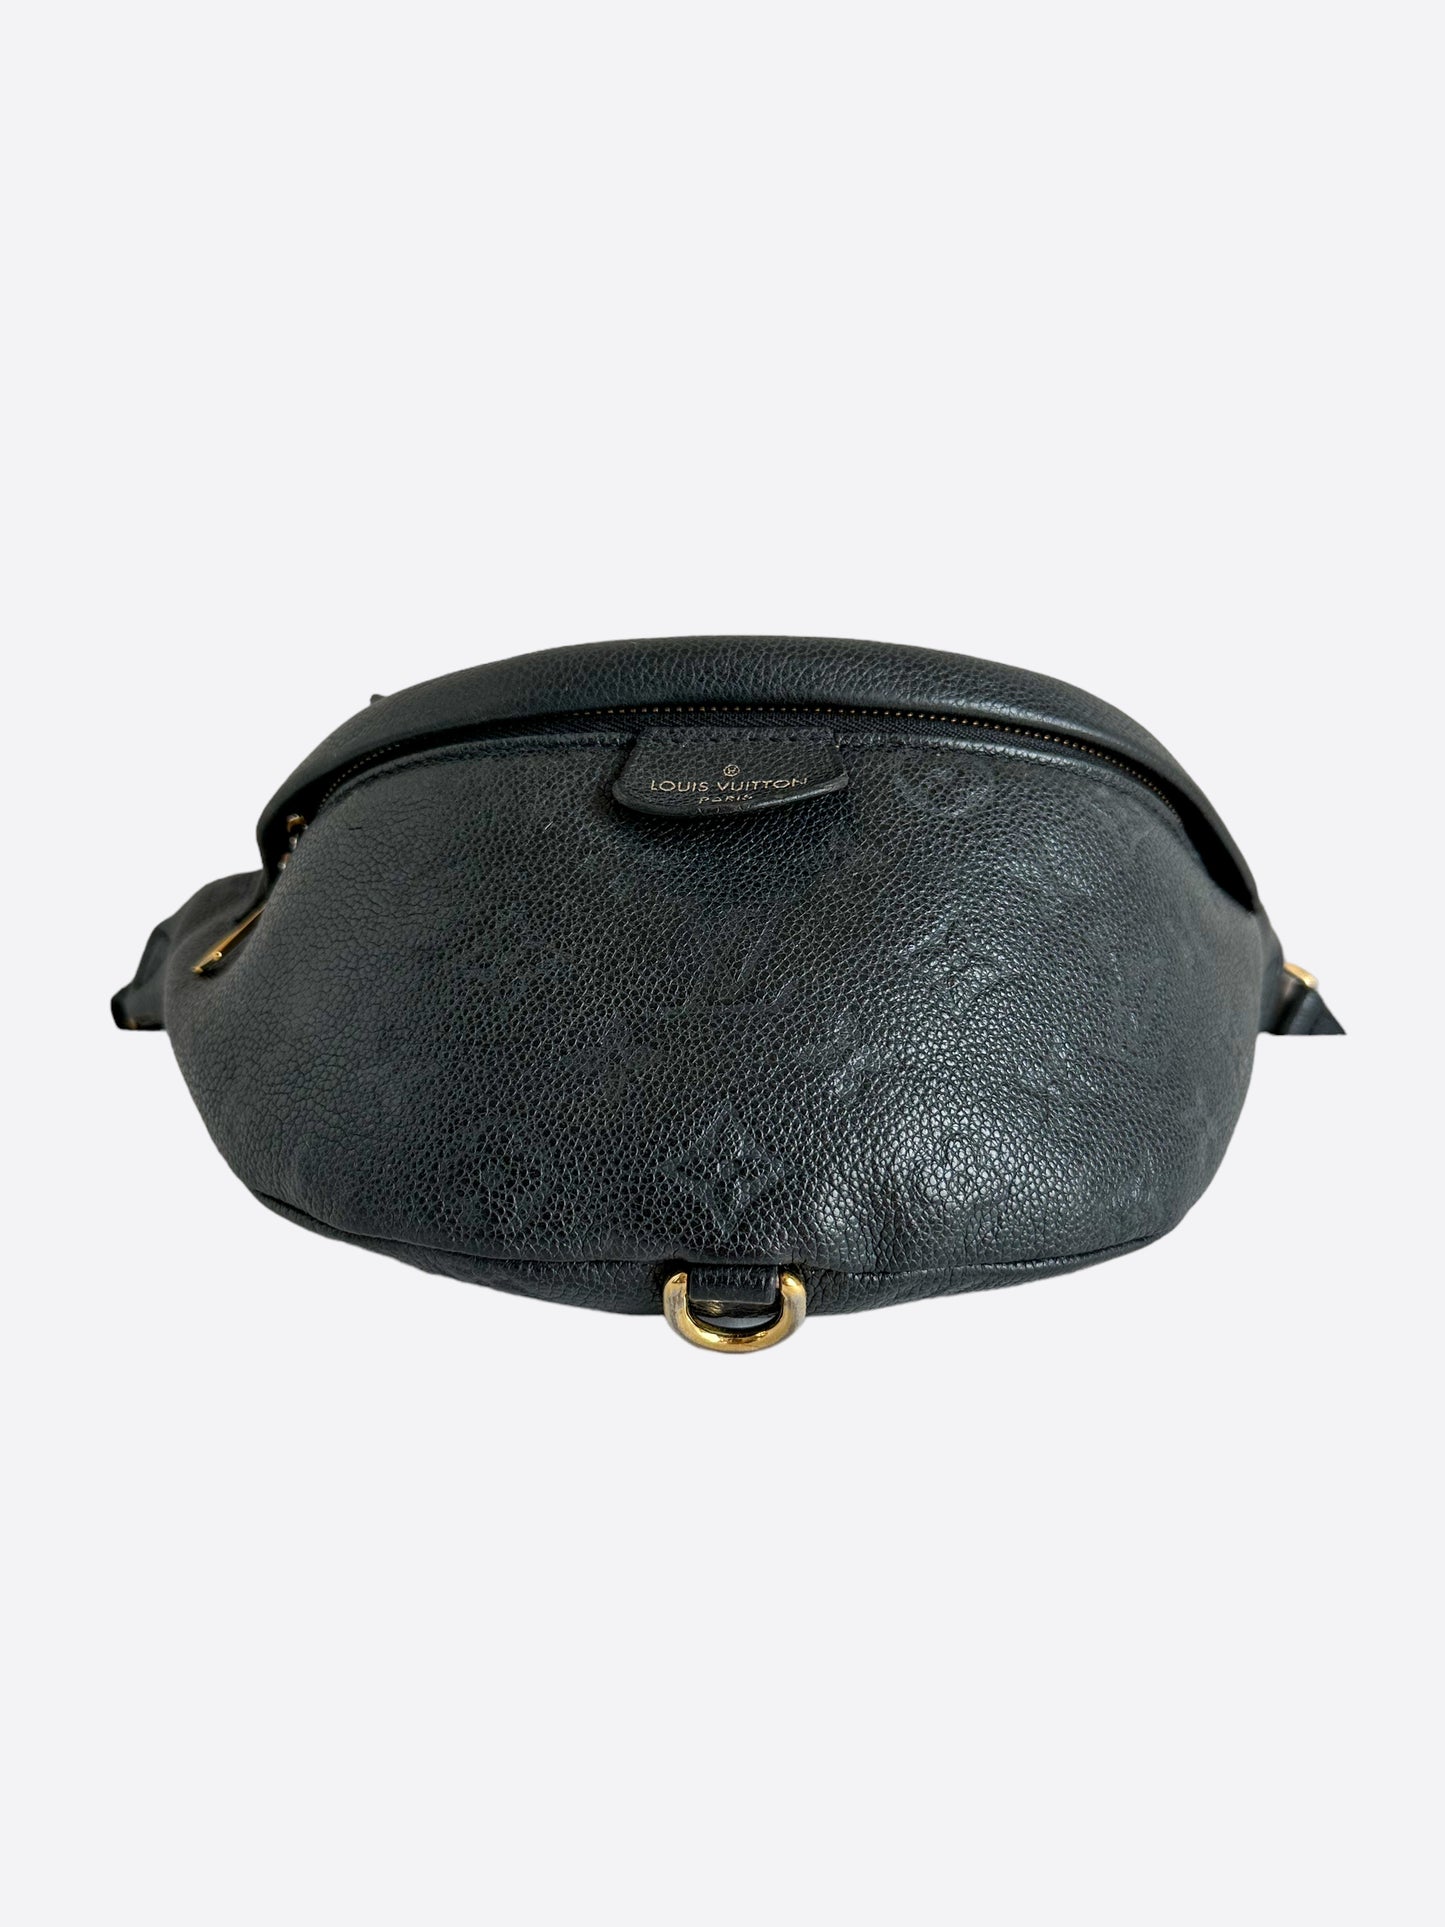 Louis Vuitton Monogram Bumbag - Preowned Louis Vuitton Bags Canada